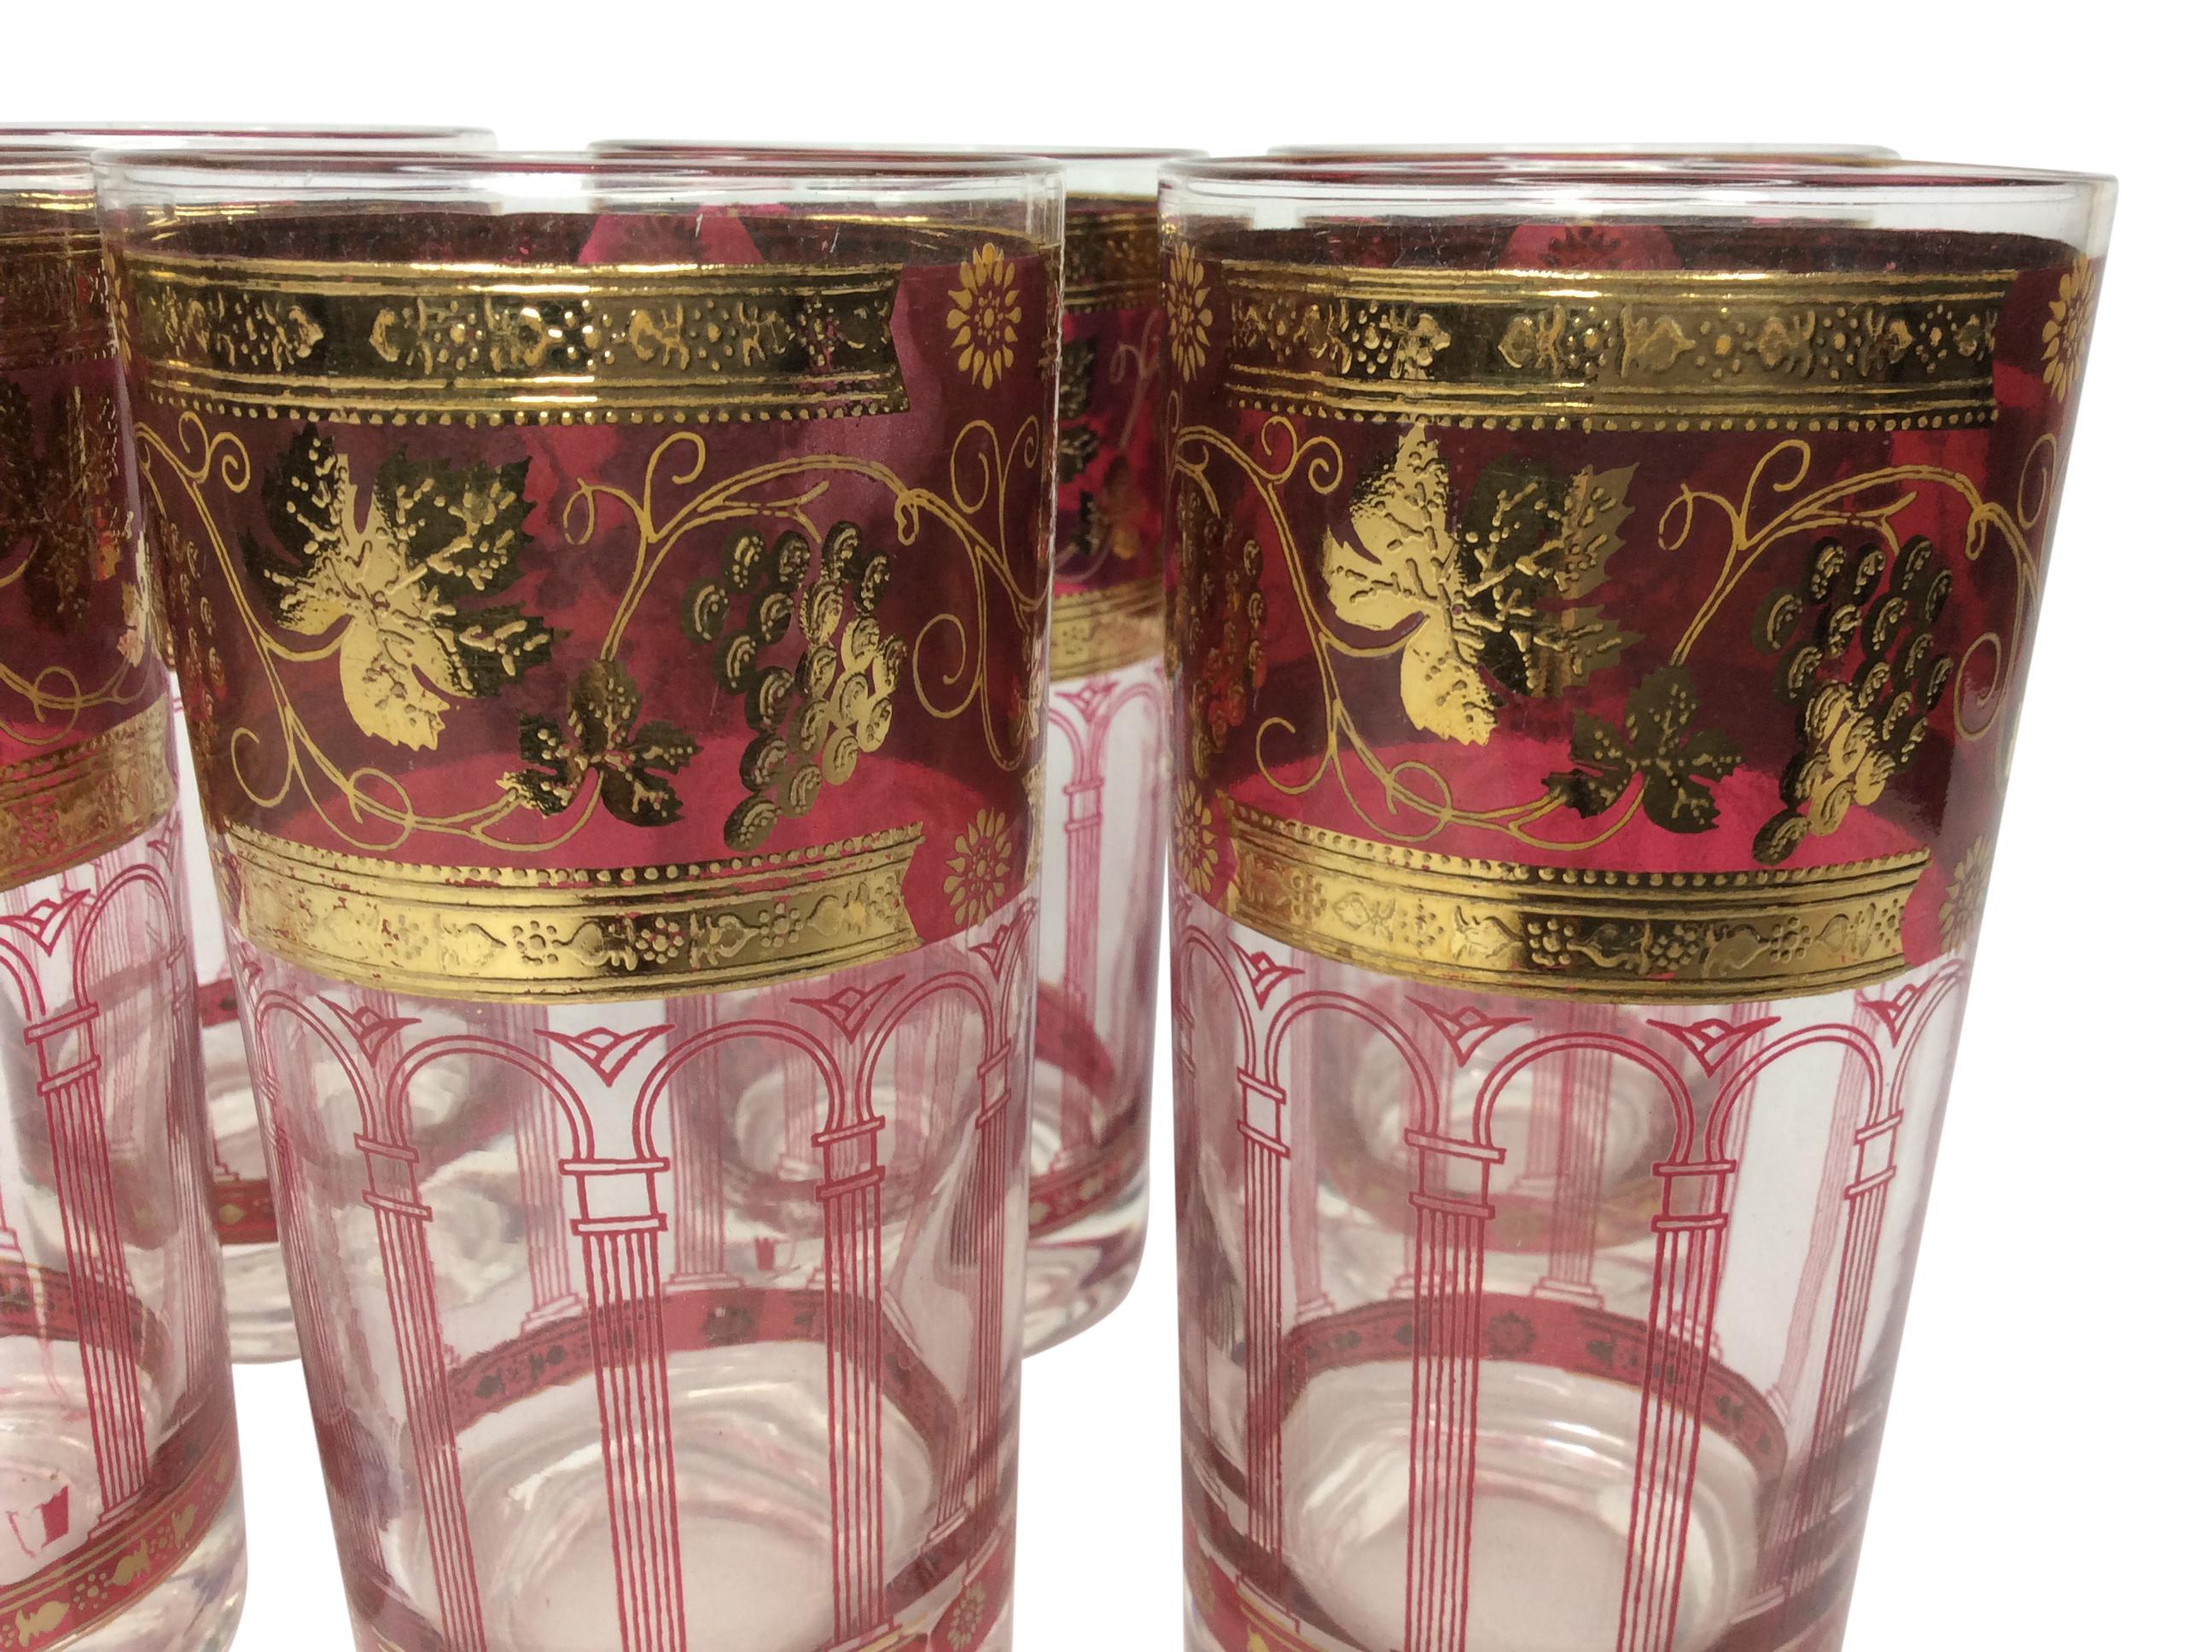 Ensemble de 6 verres Highball Vintage CERA avec une large bande dorée et canneberge avec des feuilles de raisin dorées. Sous le bandeau se trouve une série d'arcs et de colonnes de couleur canneberge.
